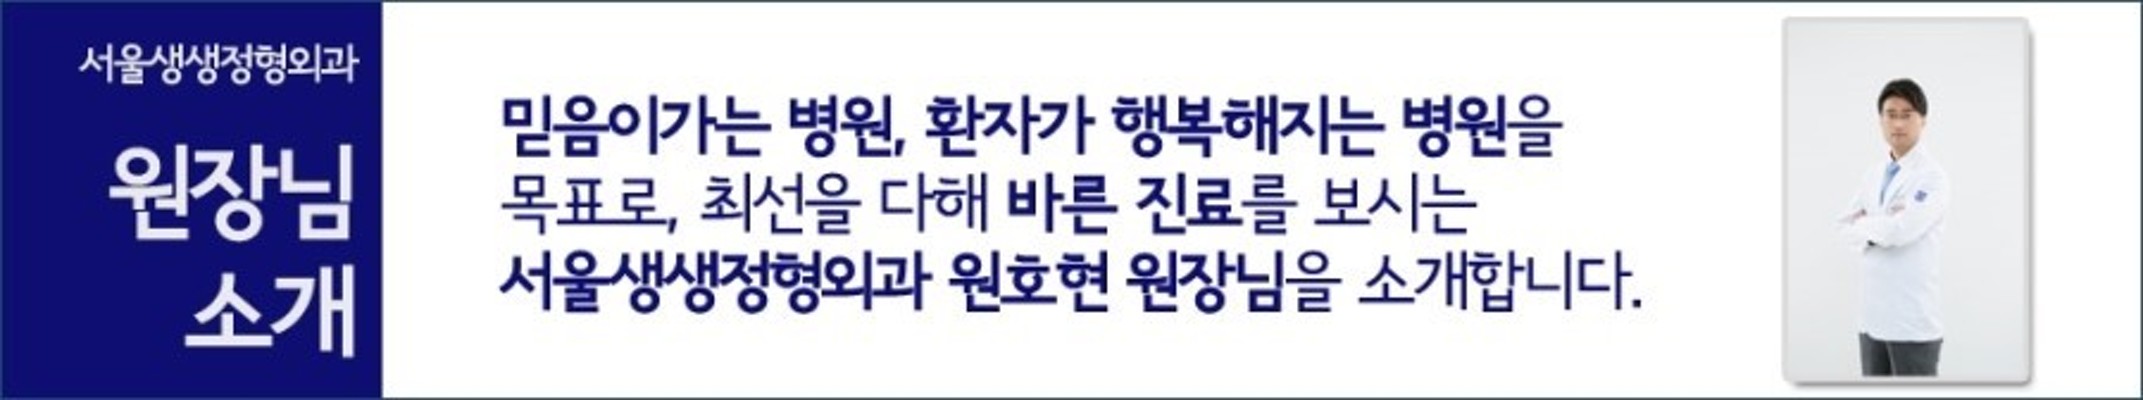 삼성역 정형외과 서울생생정형외과 '의료진 소개' | 블로그